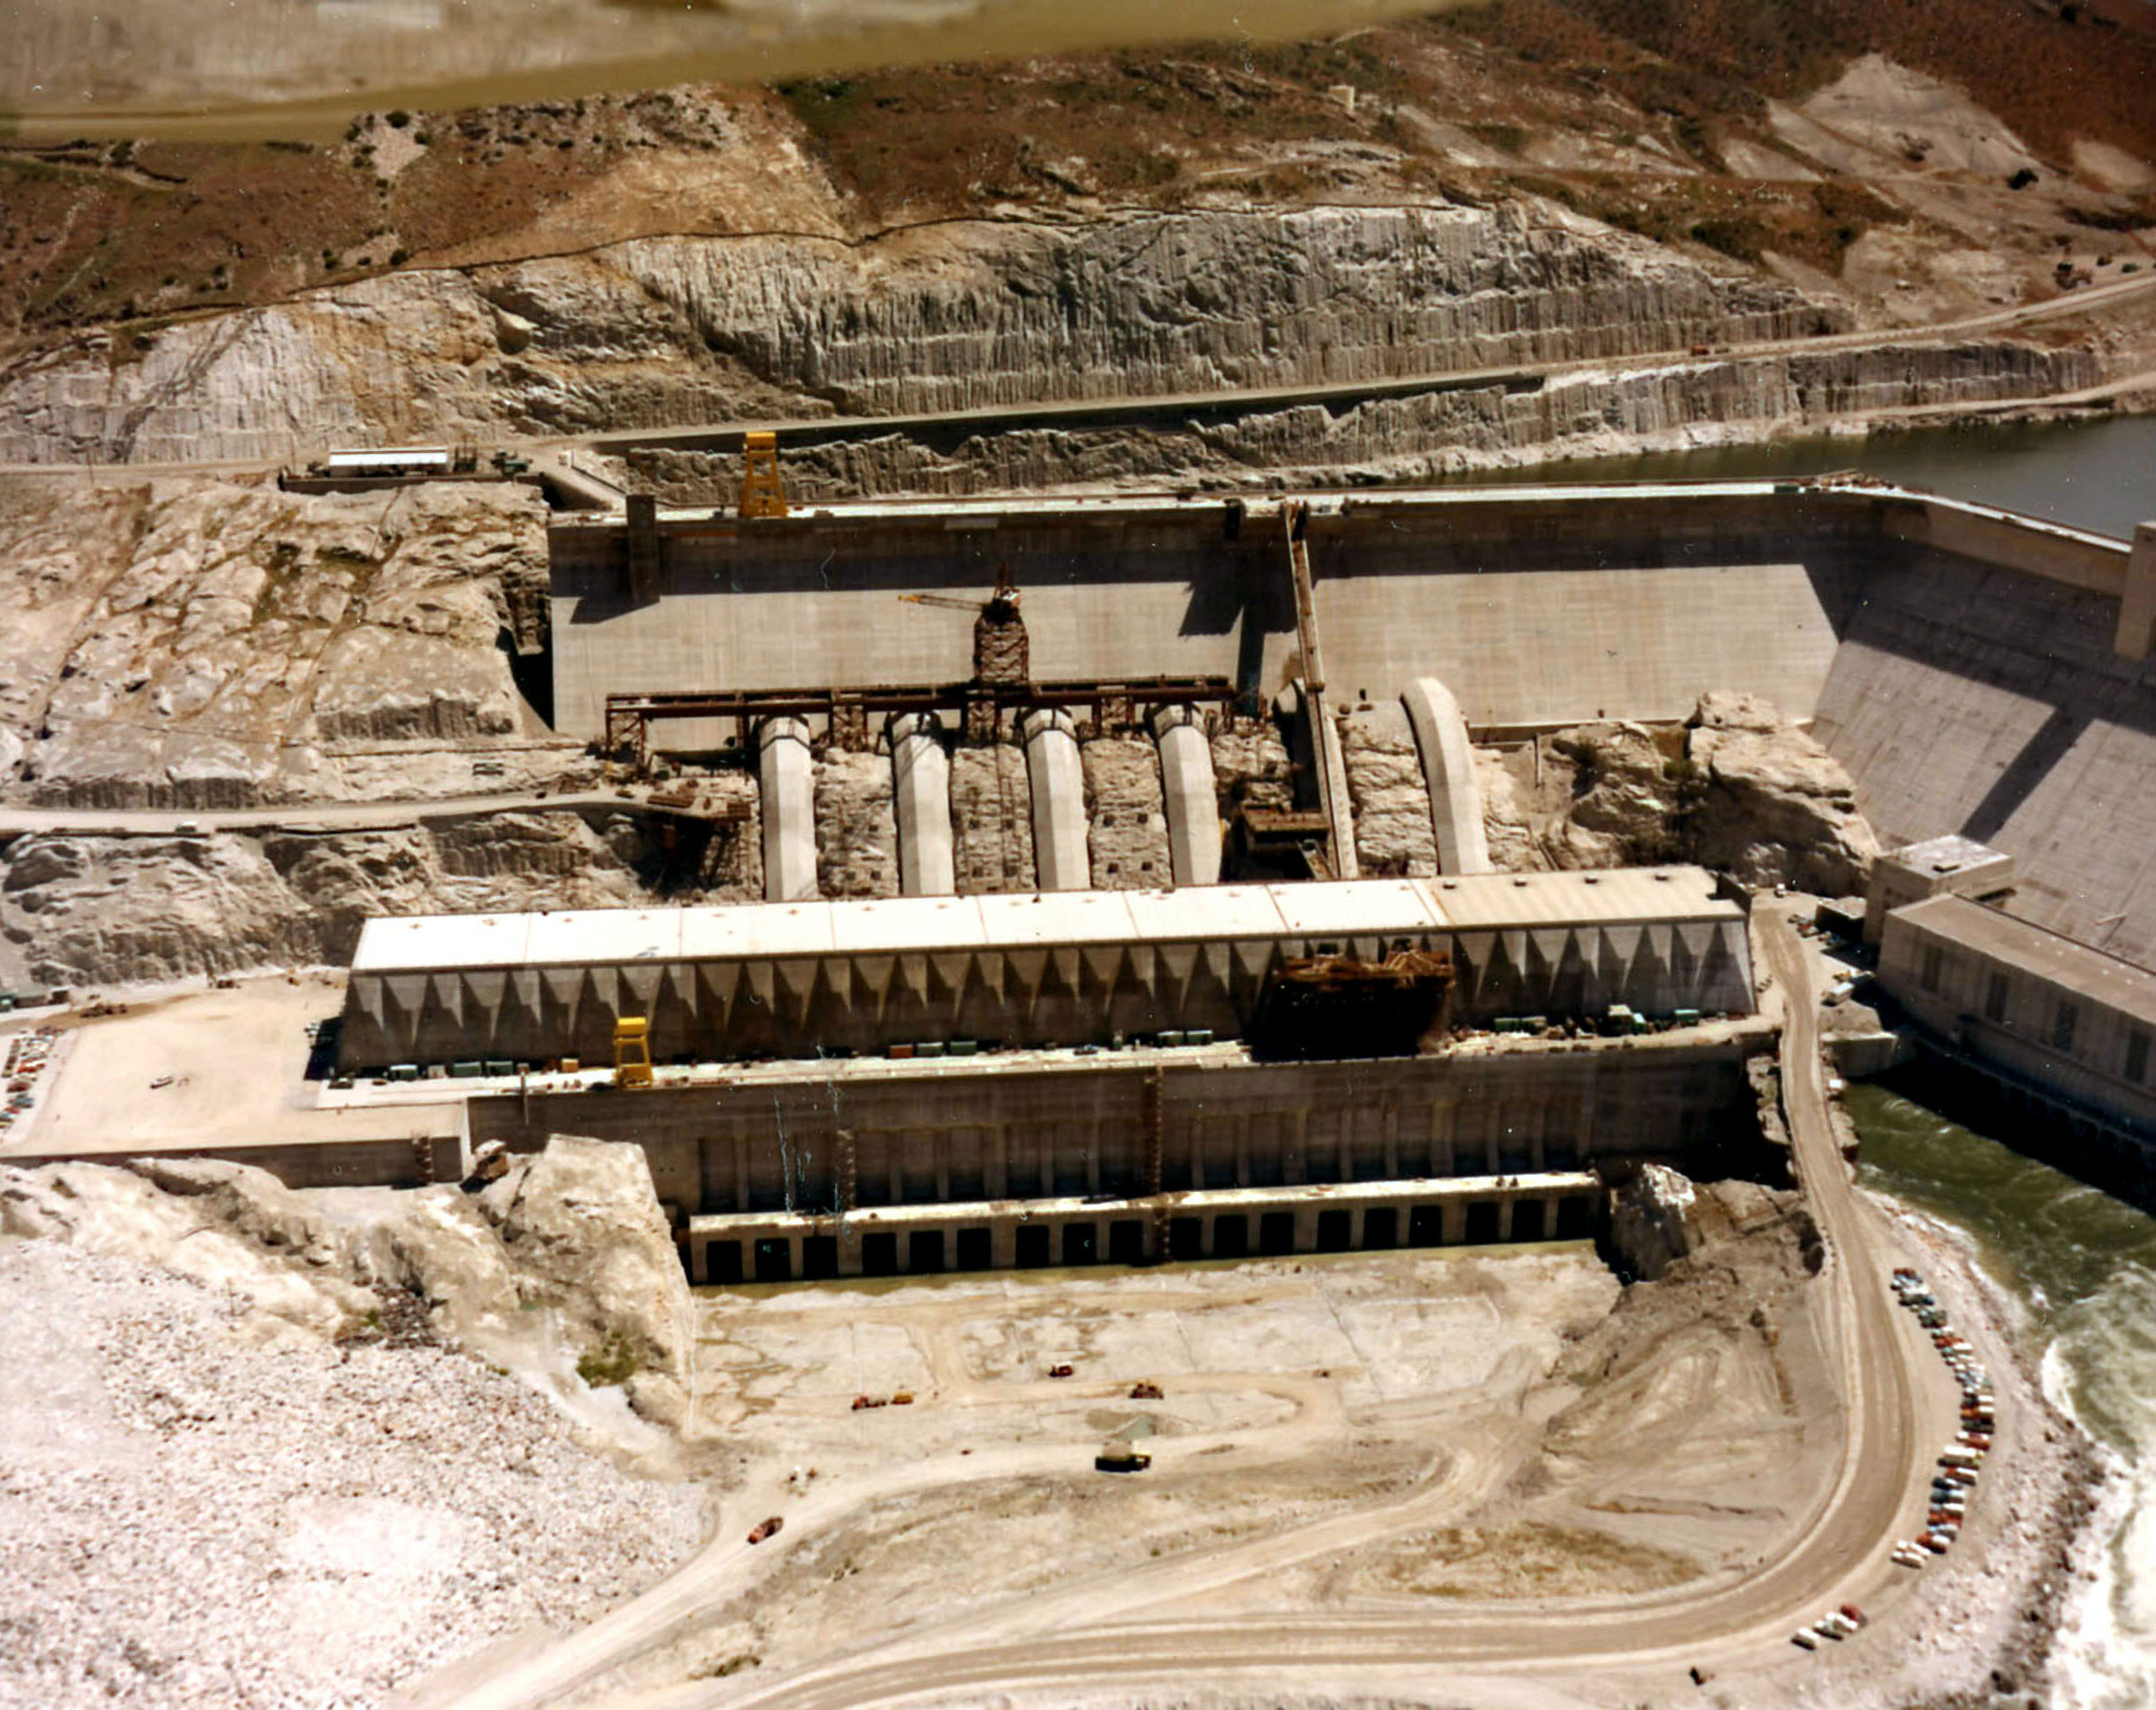 May 28, 1974. Nathaniel Washington Power Plant construction at Grand Coulee Dam.